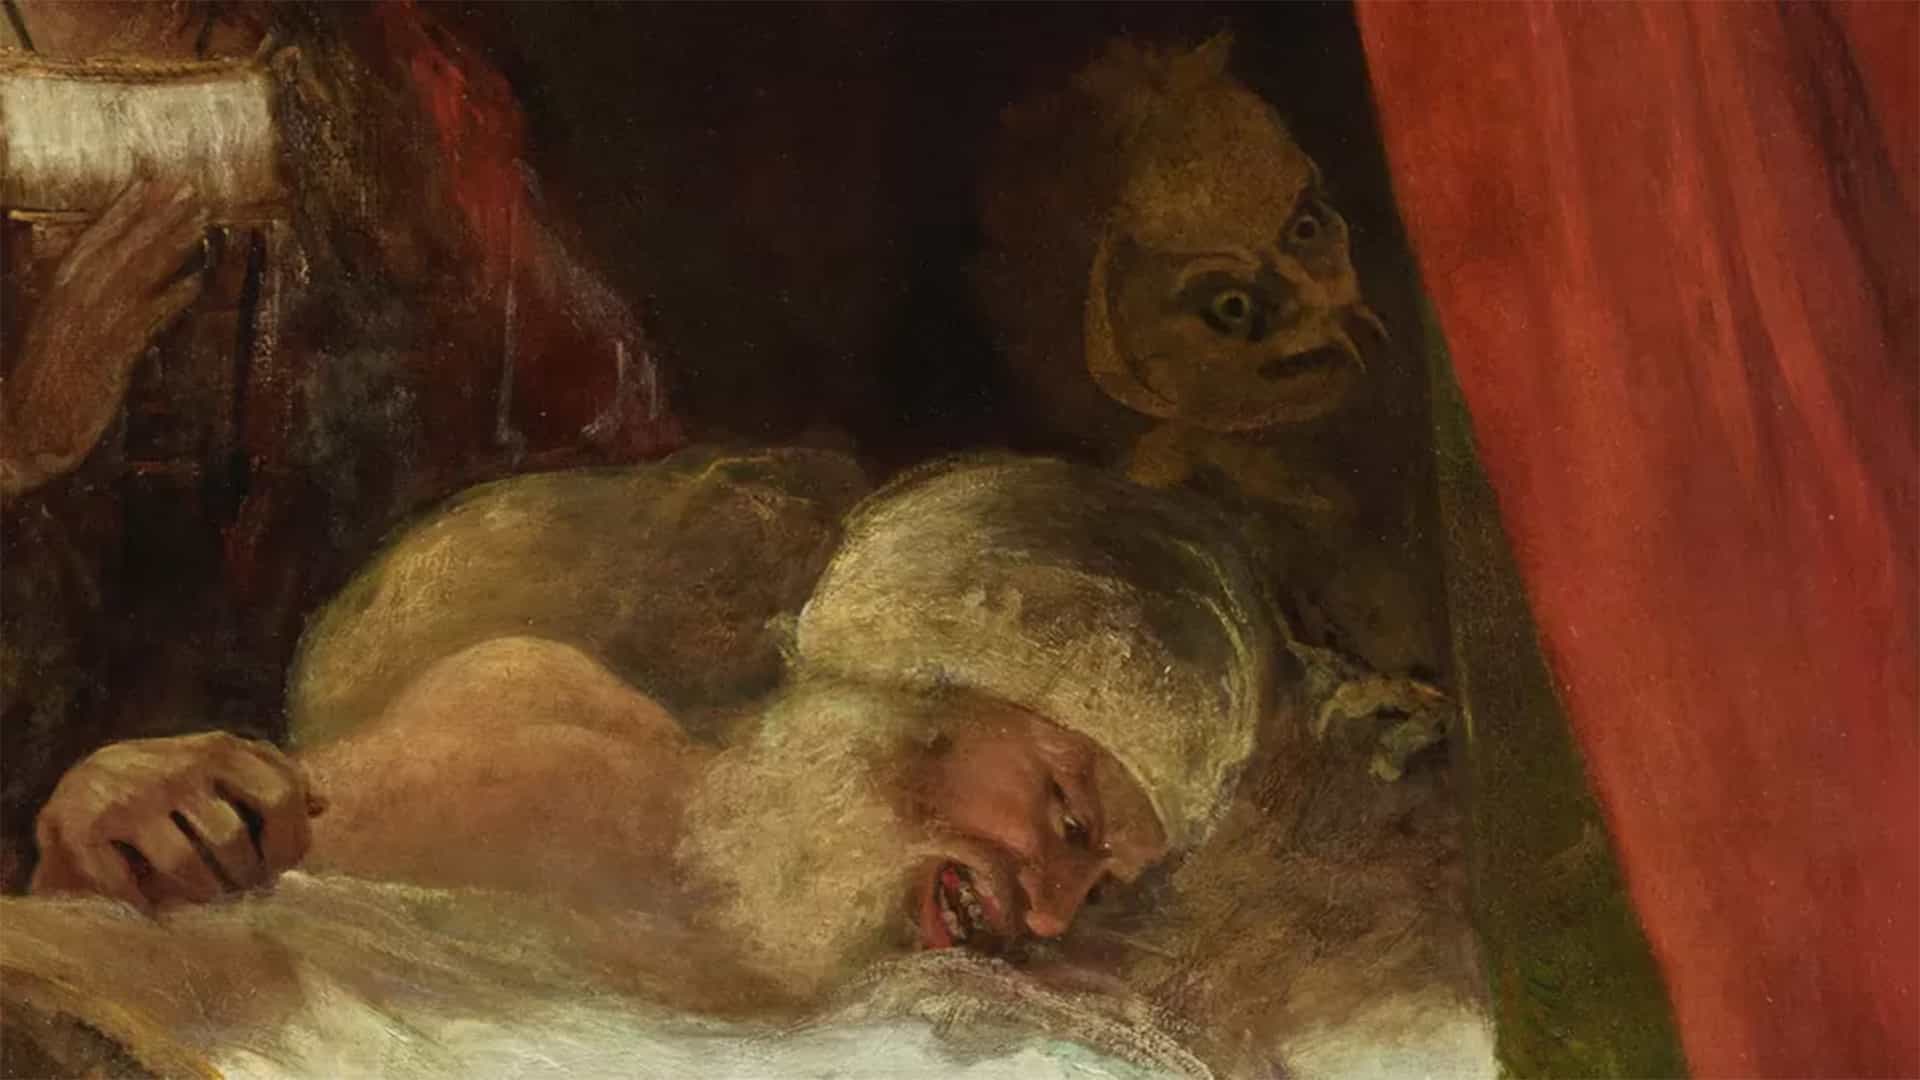 Esta pintura de demonios restaurada va a perseguir mis pesadillas